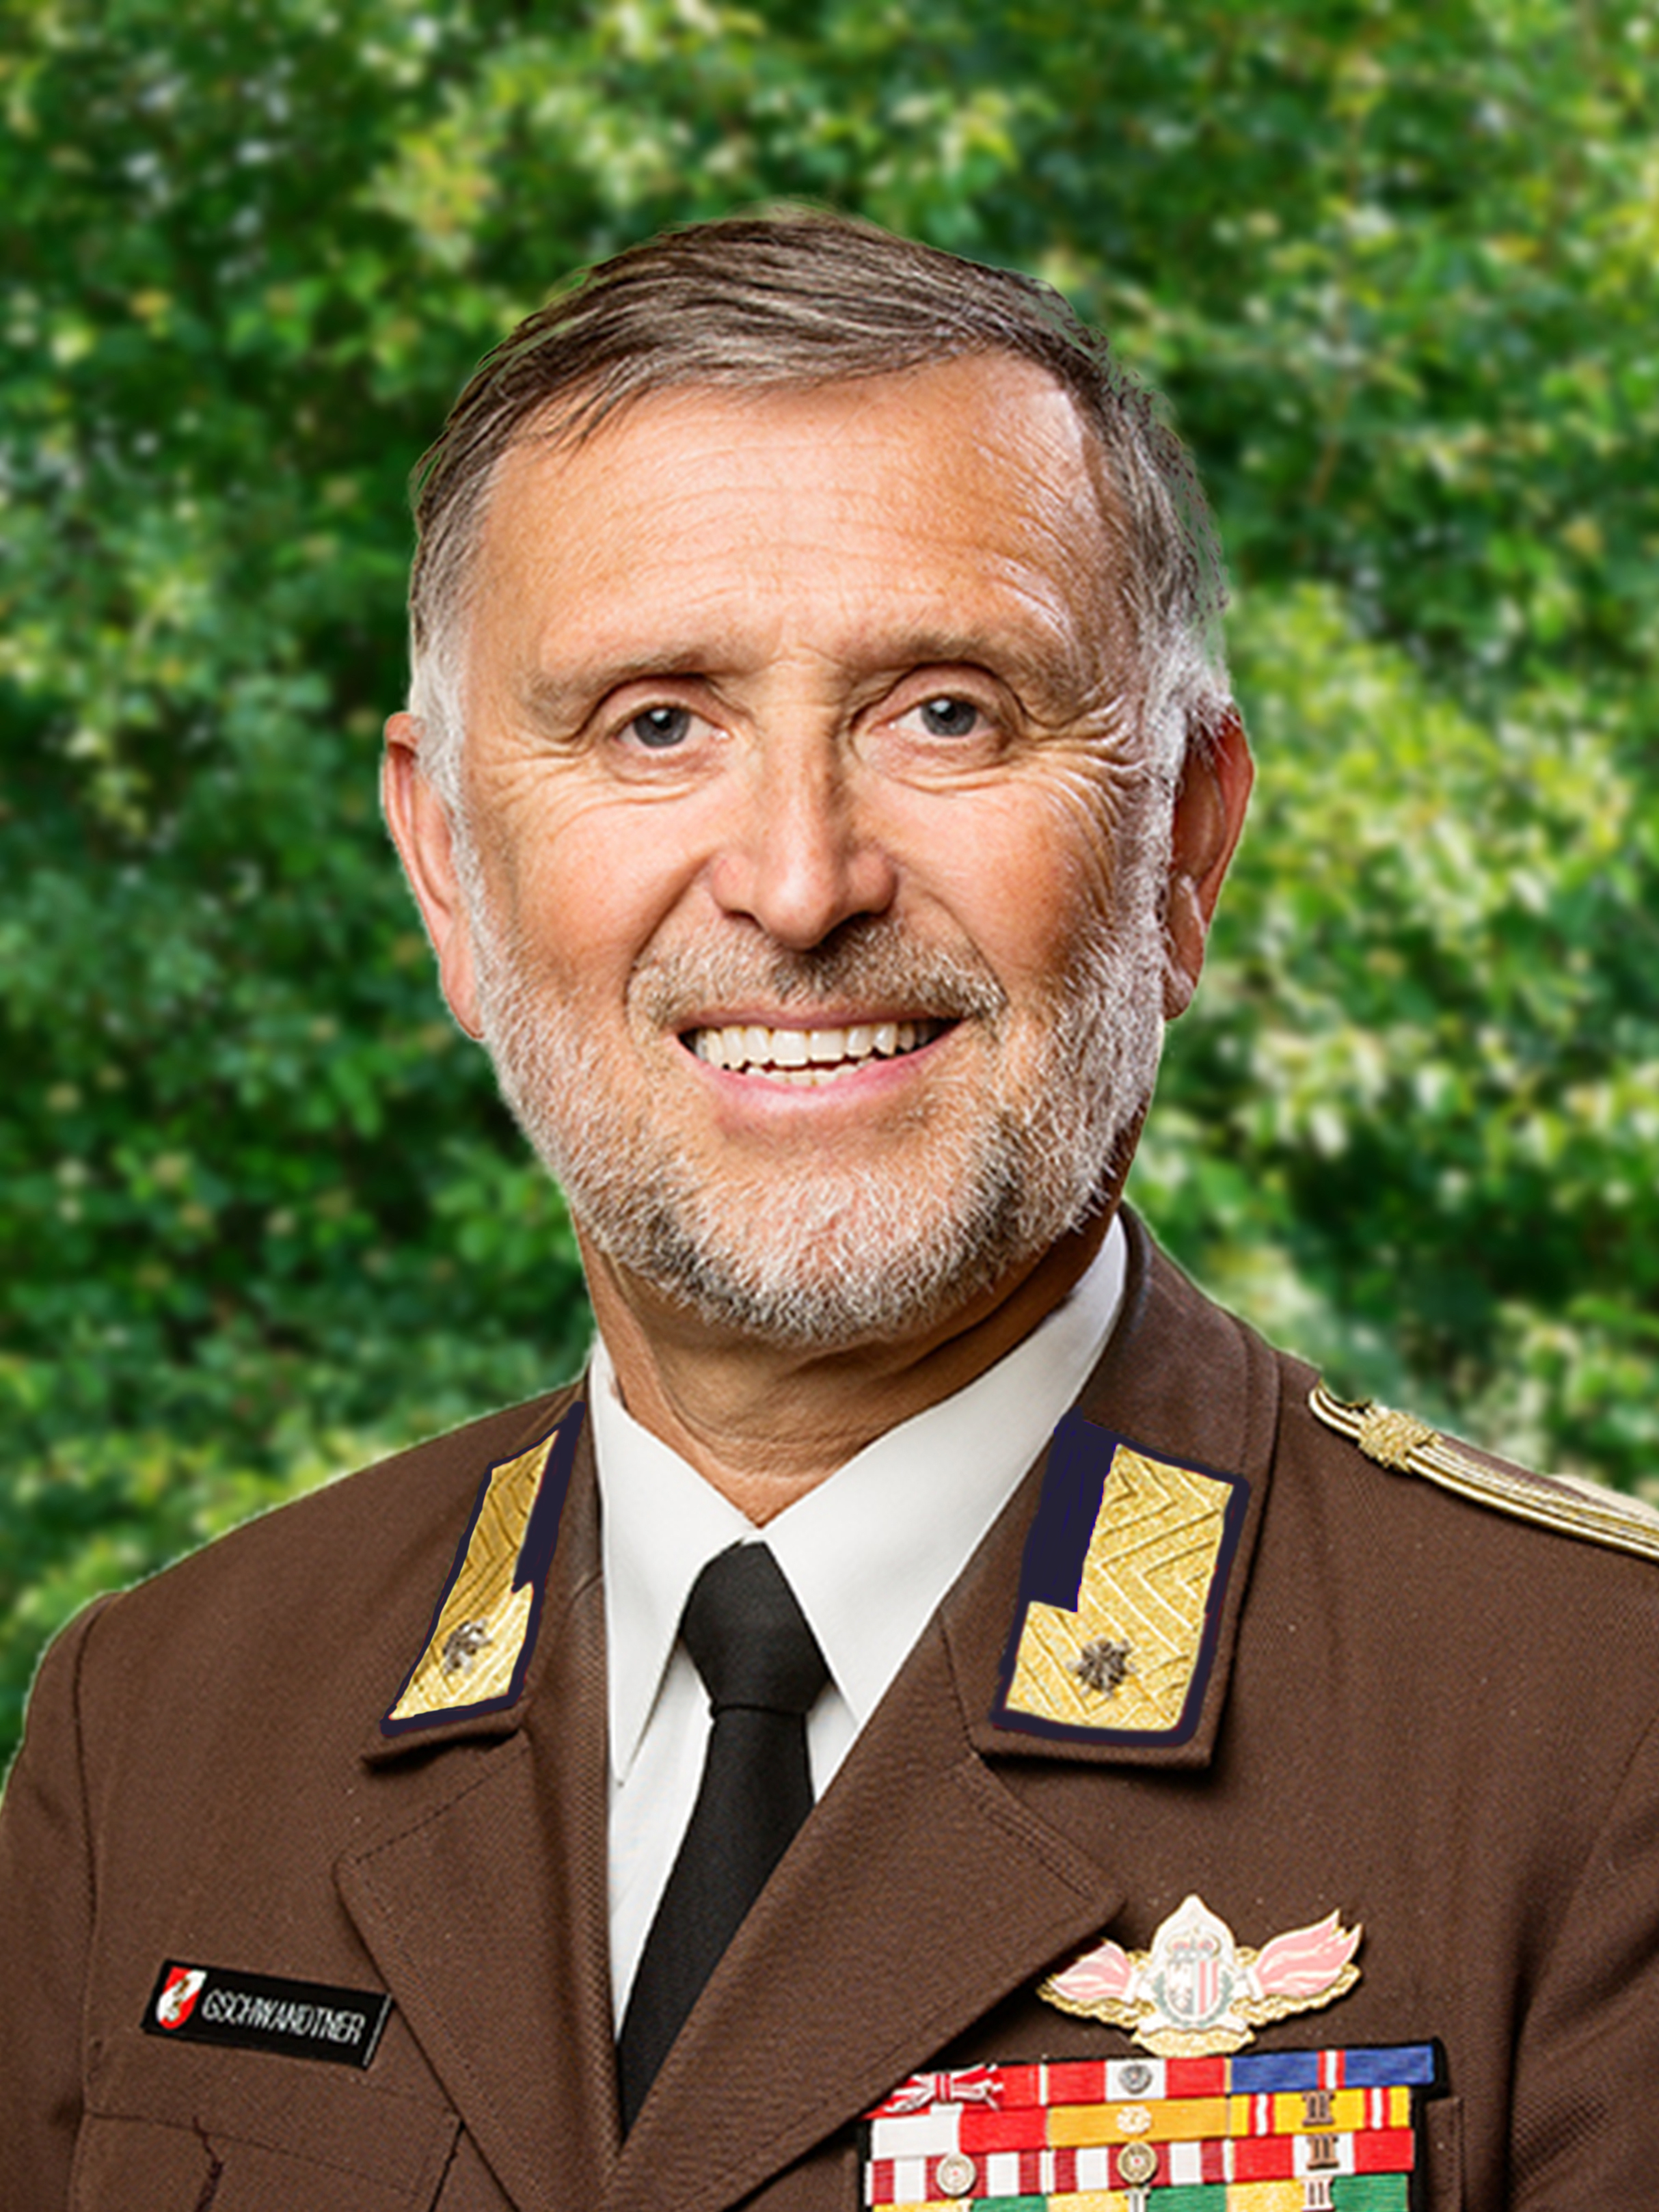 Martin Gschwandtner